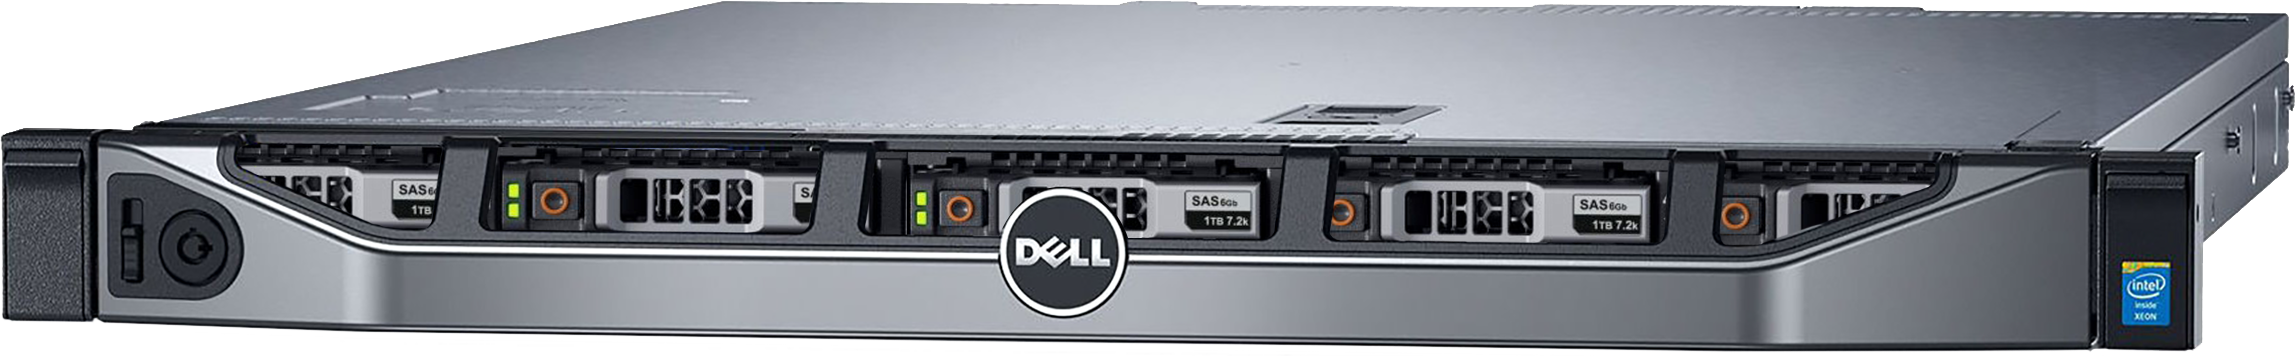 Аренда физического сервера DELL R620 / 2 × E5-2697 v2 / 256 GB RAM / 2 x 240 GB SSD / 6 x 480 GB SSD / H710p